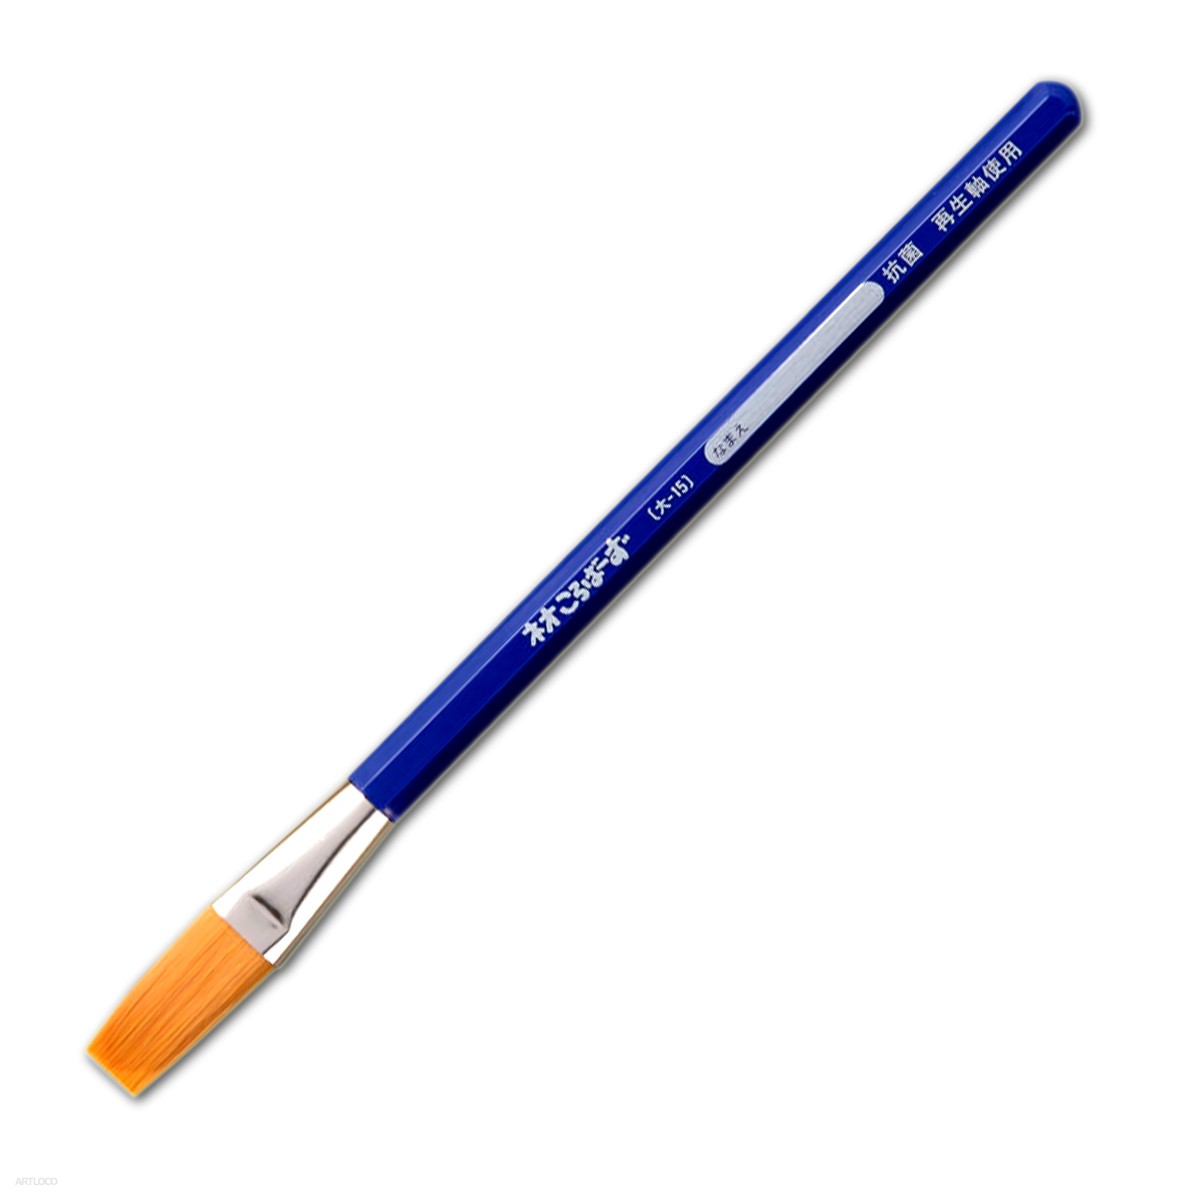 呉竹 クレタケ 画筆 フィス水筆ペンミニ 中 筆洗い不要のどこでも絵手紙を描ける 水内蔵型の筆ペン KG205-40